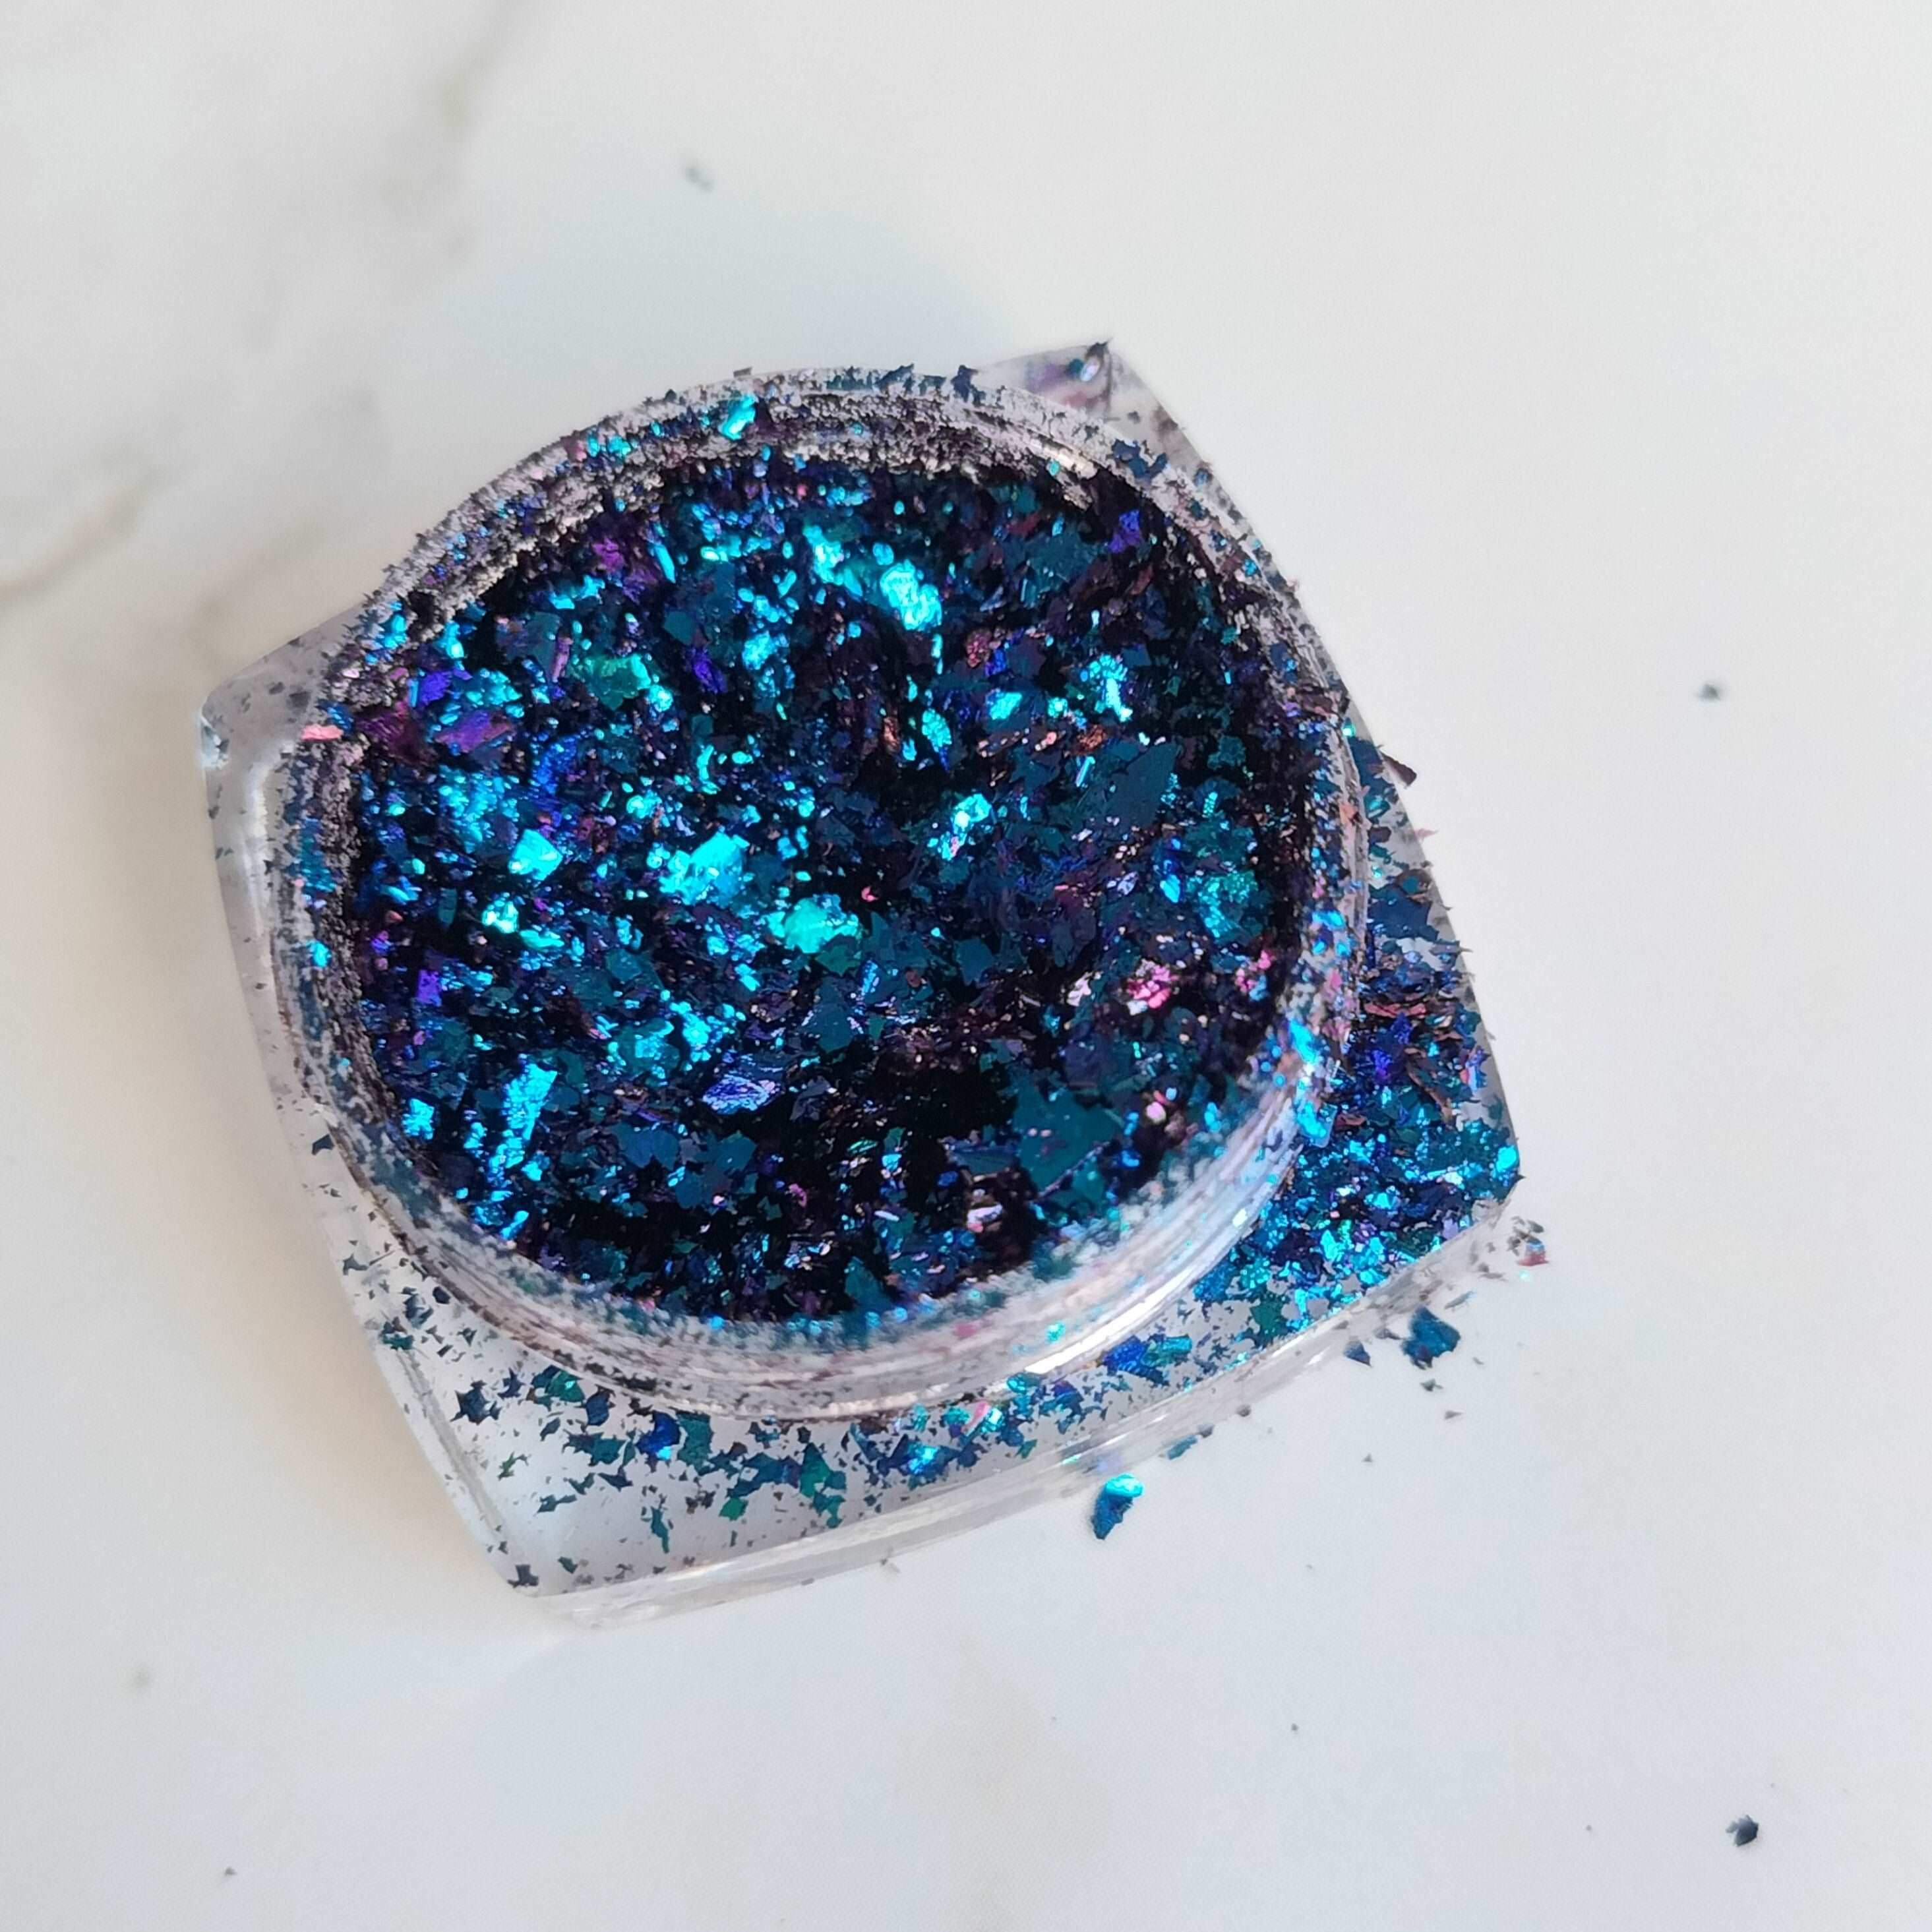 Dark Blue Chrome Chameleon Flakes, Epoxy Resin Art & Craft, Brisbane, Australia